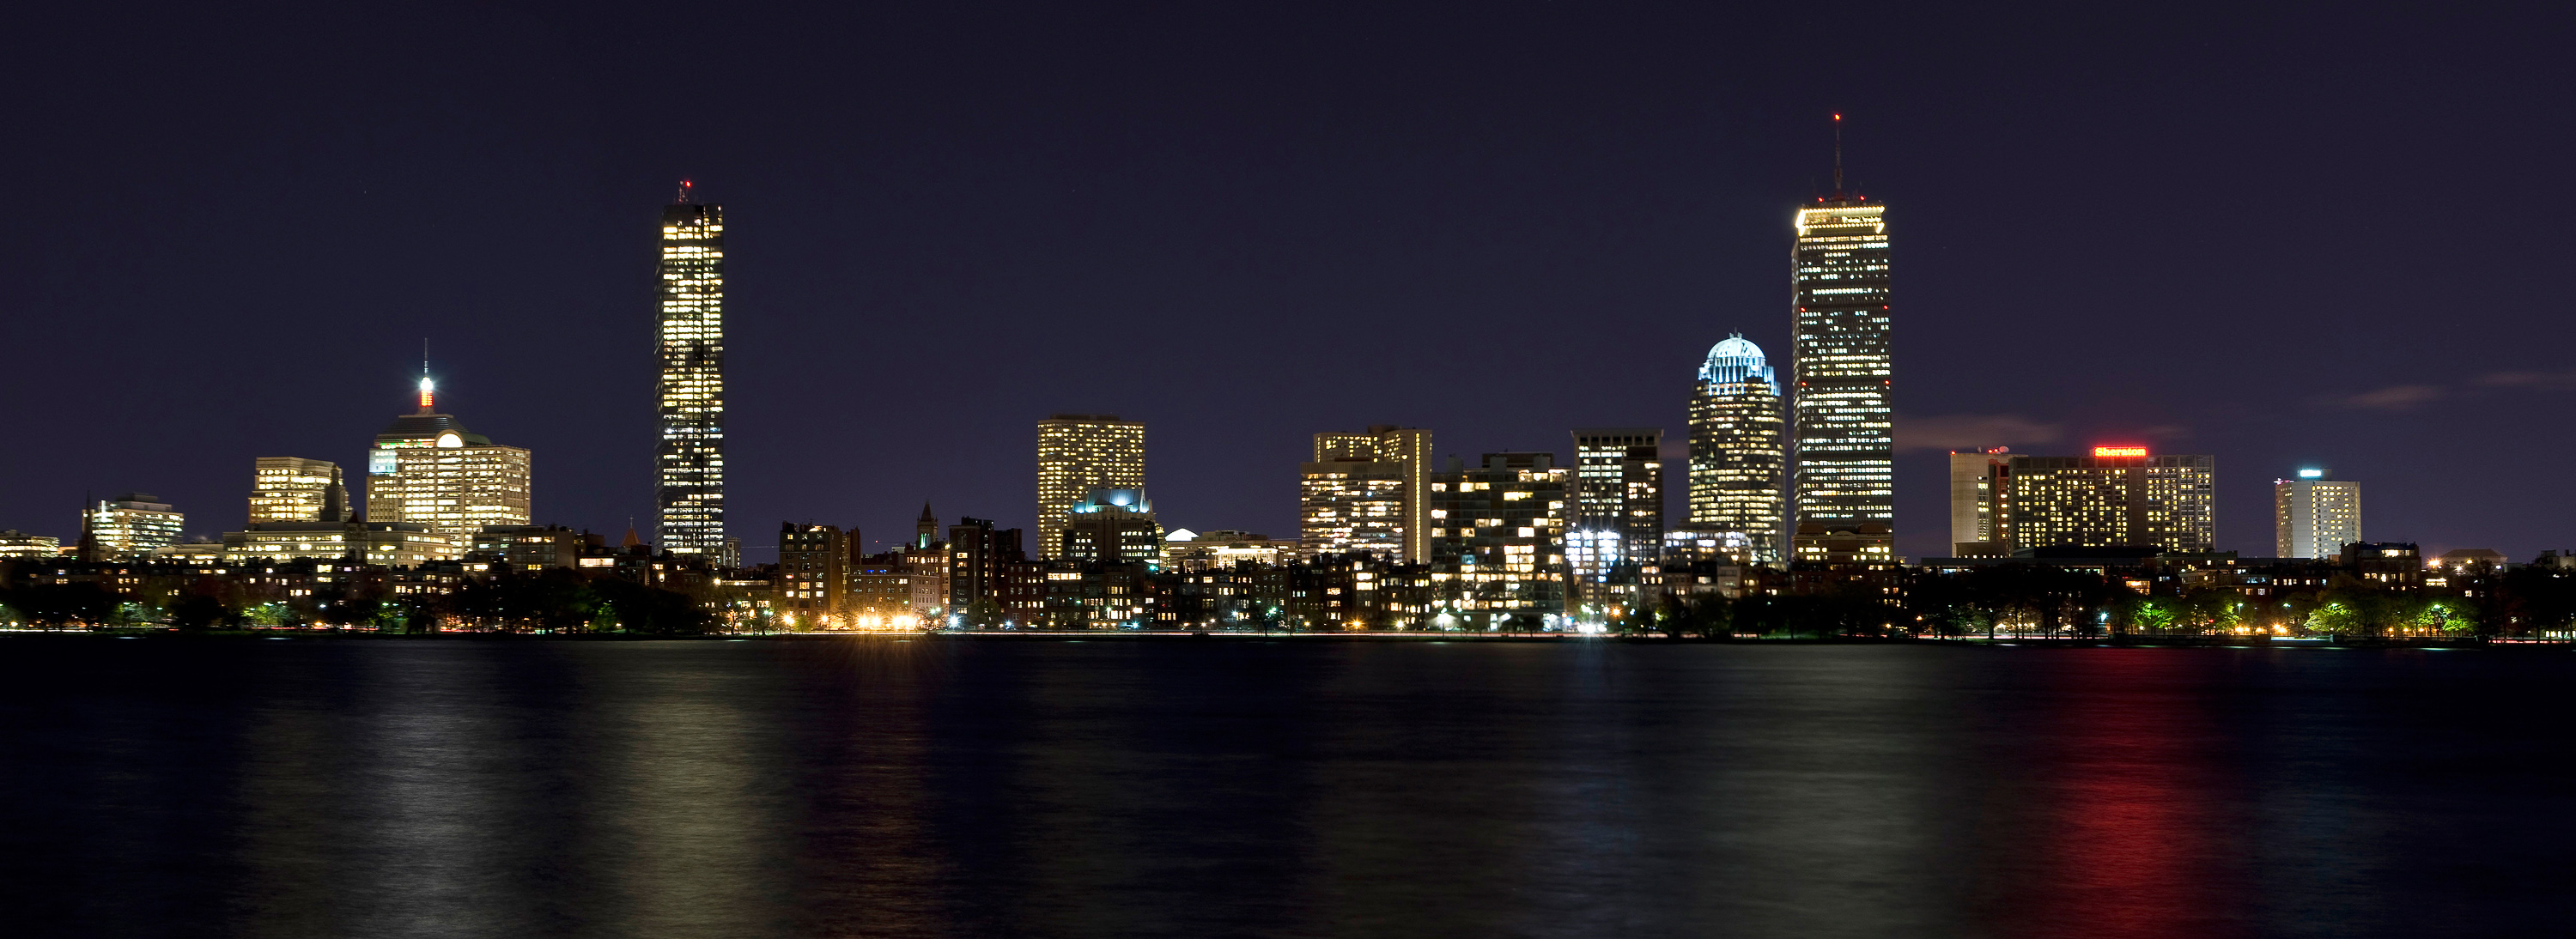 Boston night pano1